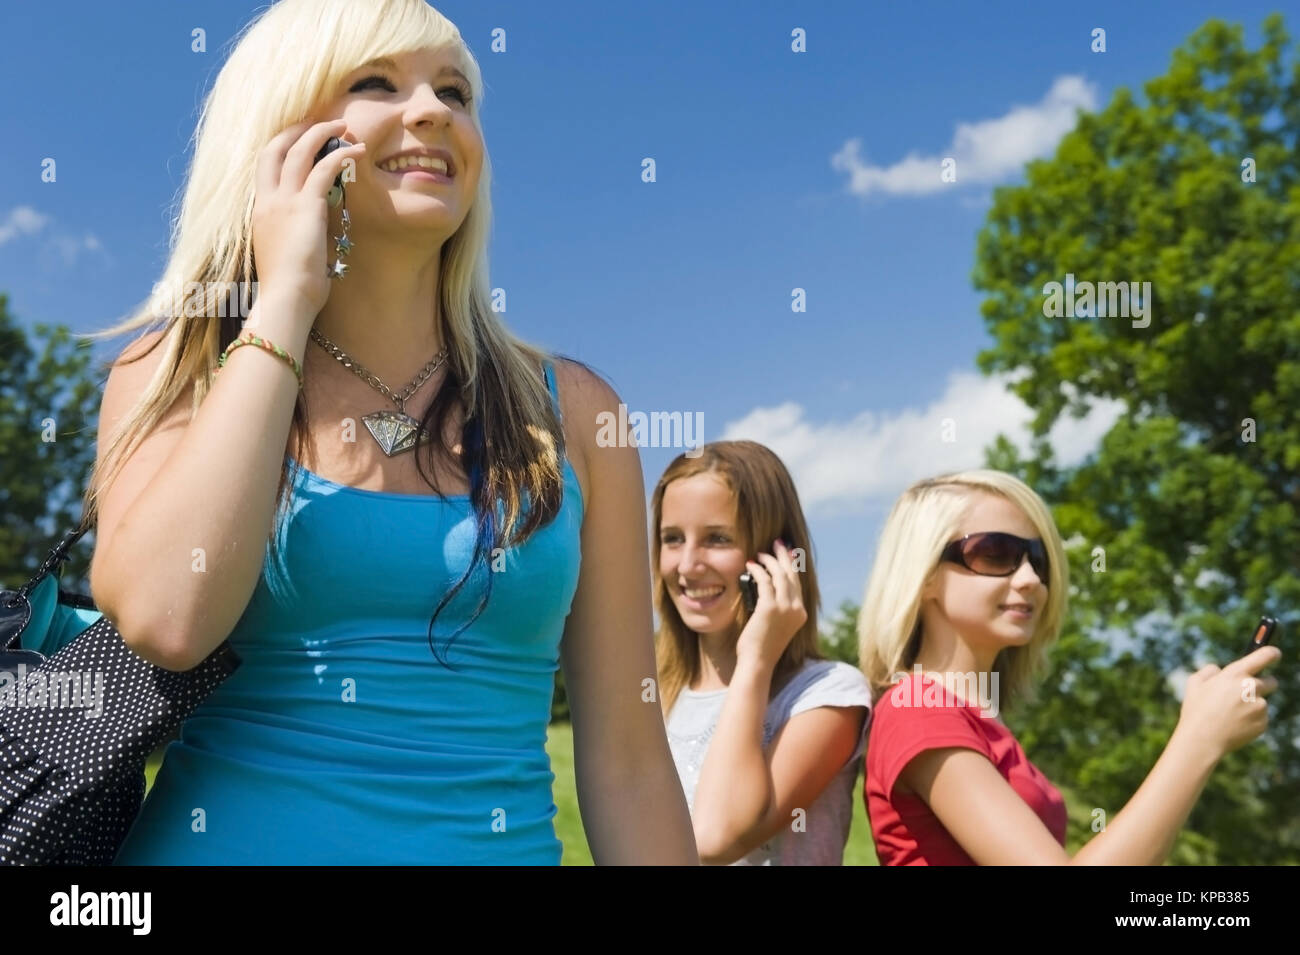 Model release, Jugendliche Maedchen telefonieren mit Handies - teenage girls using mobile phones Stock Photo